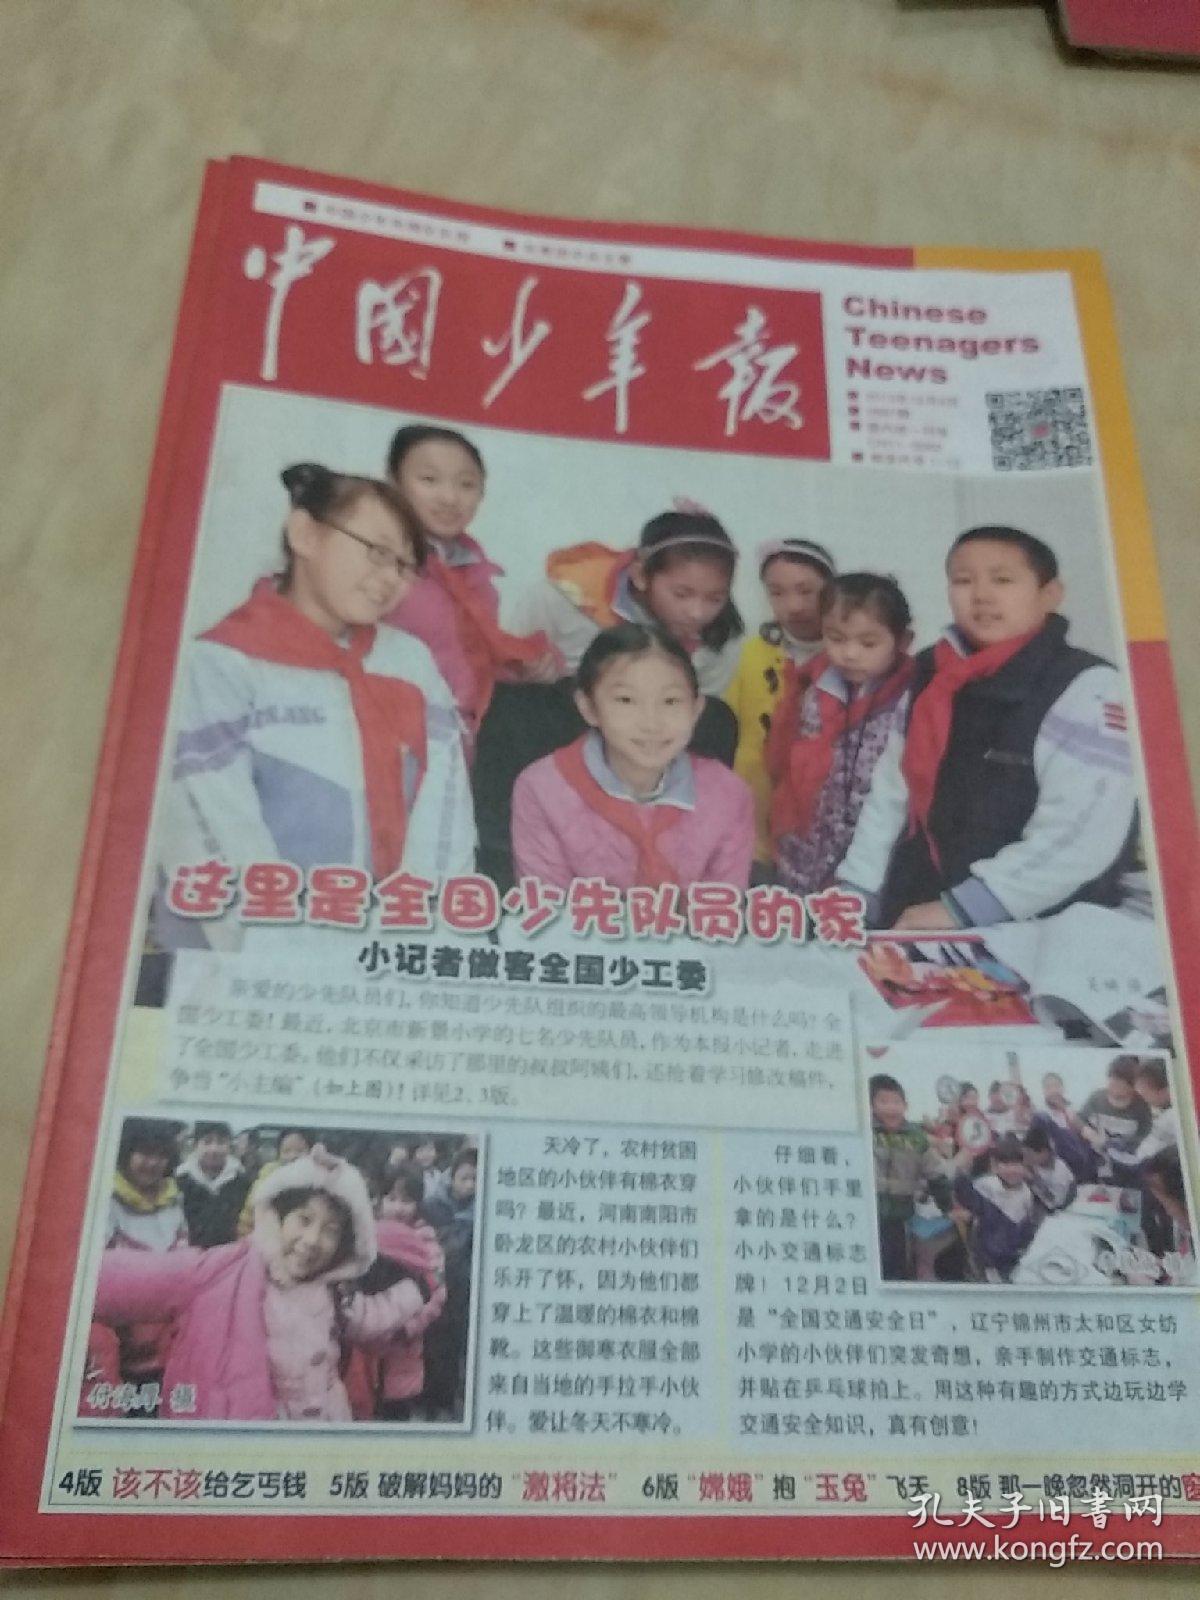 中国少年报（2013.7--12月）18本合售